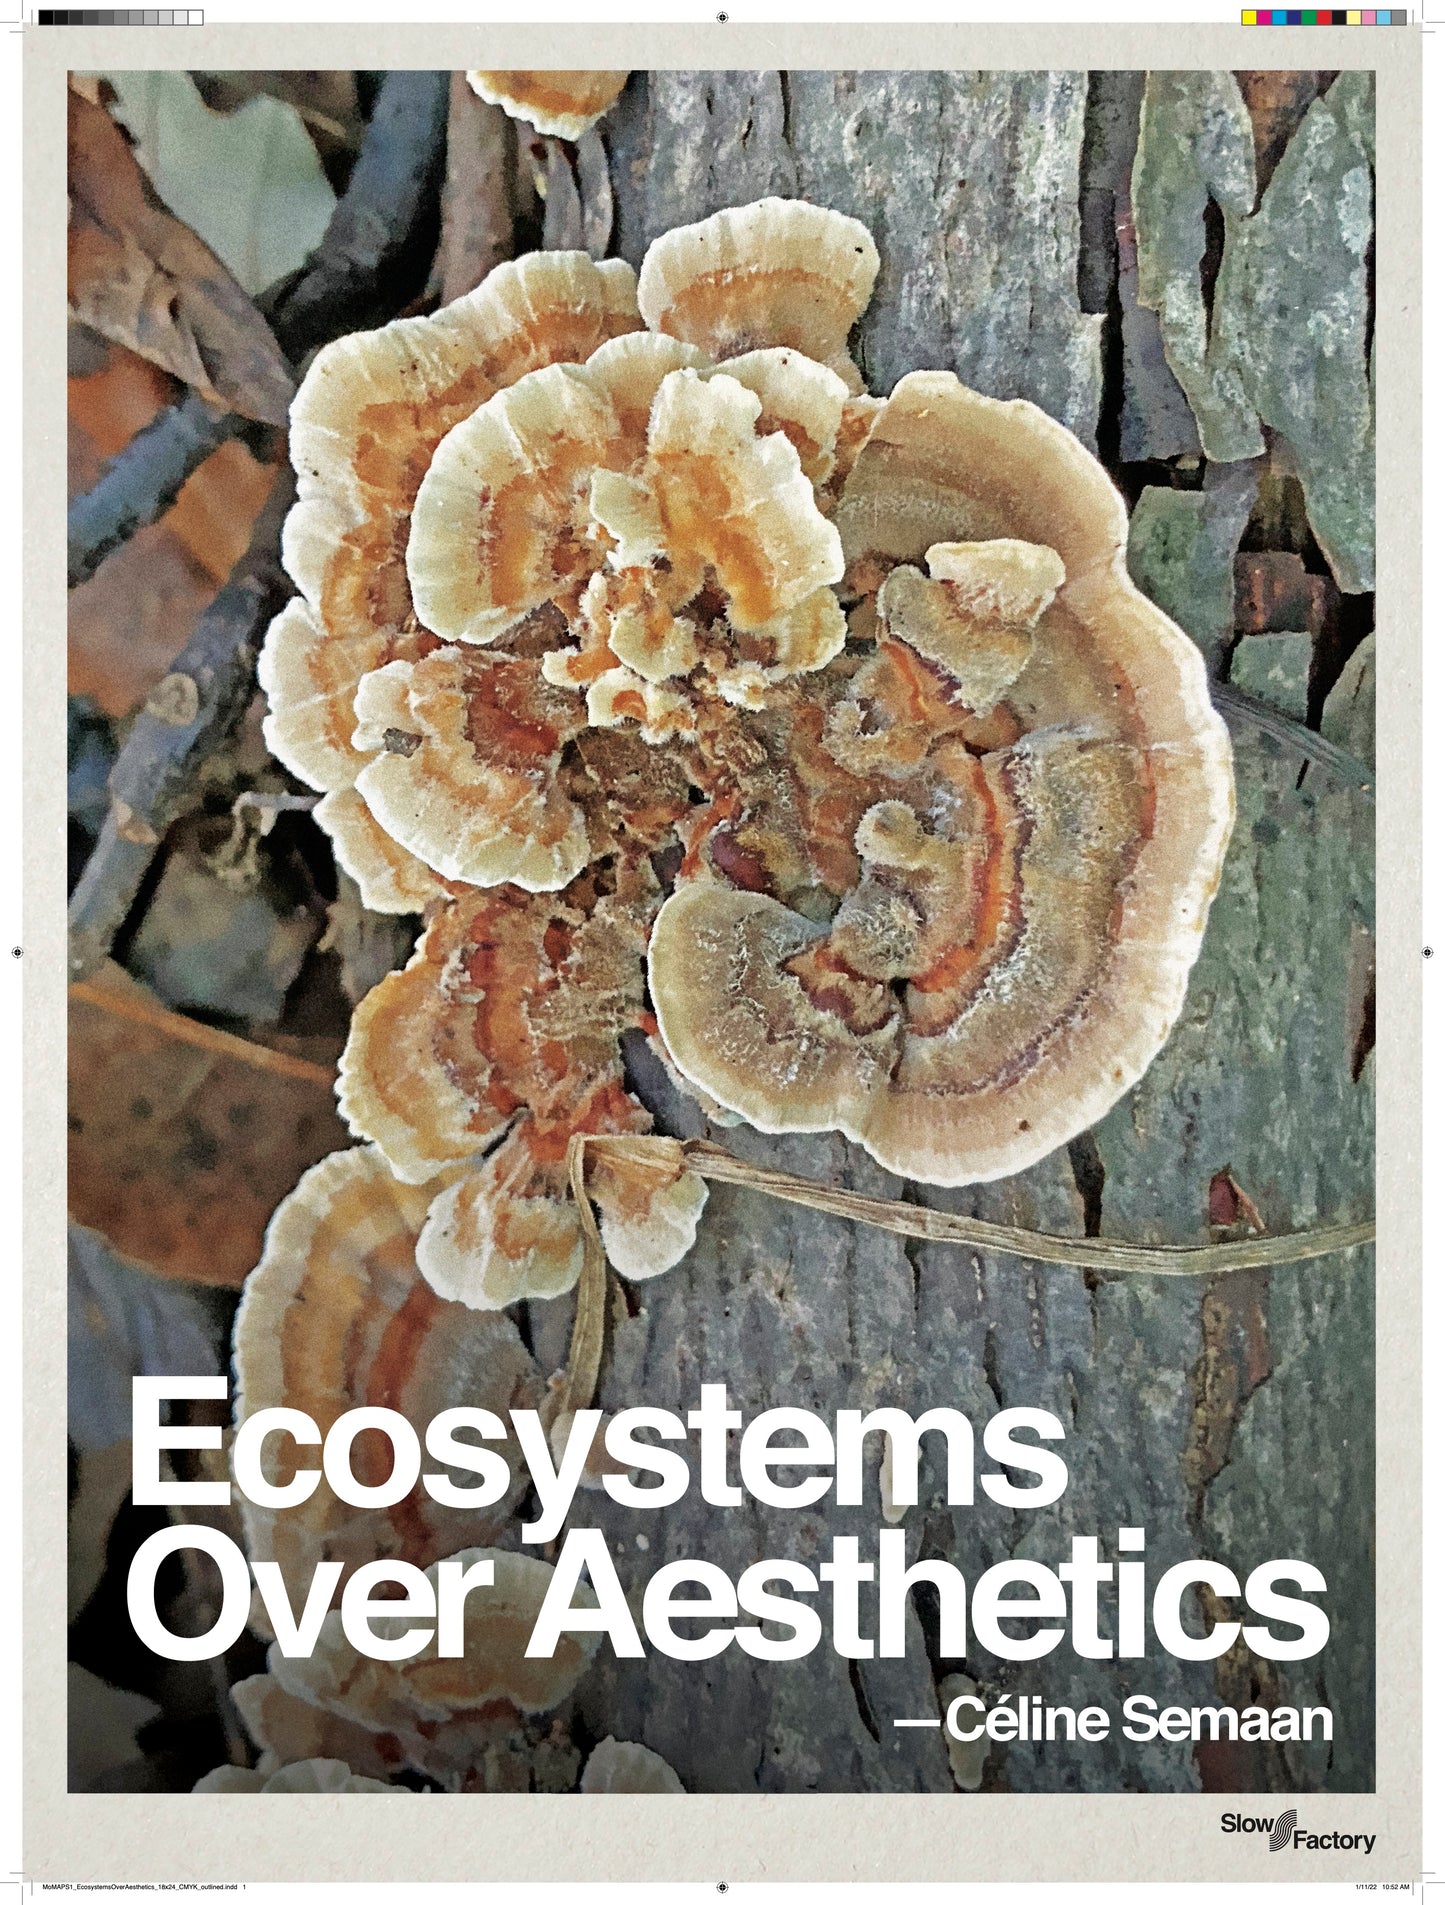 Ecosystems Over Aesthetics